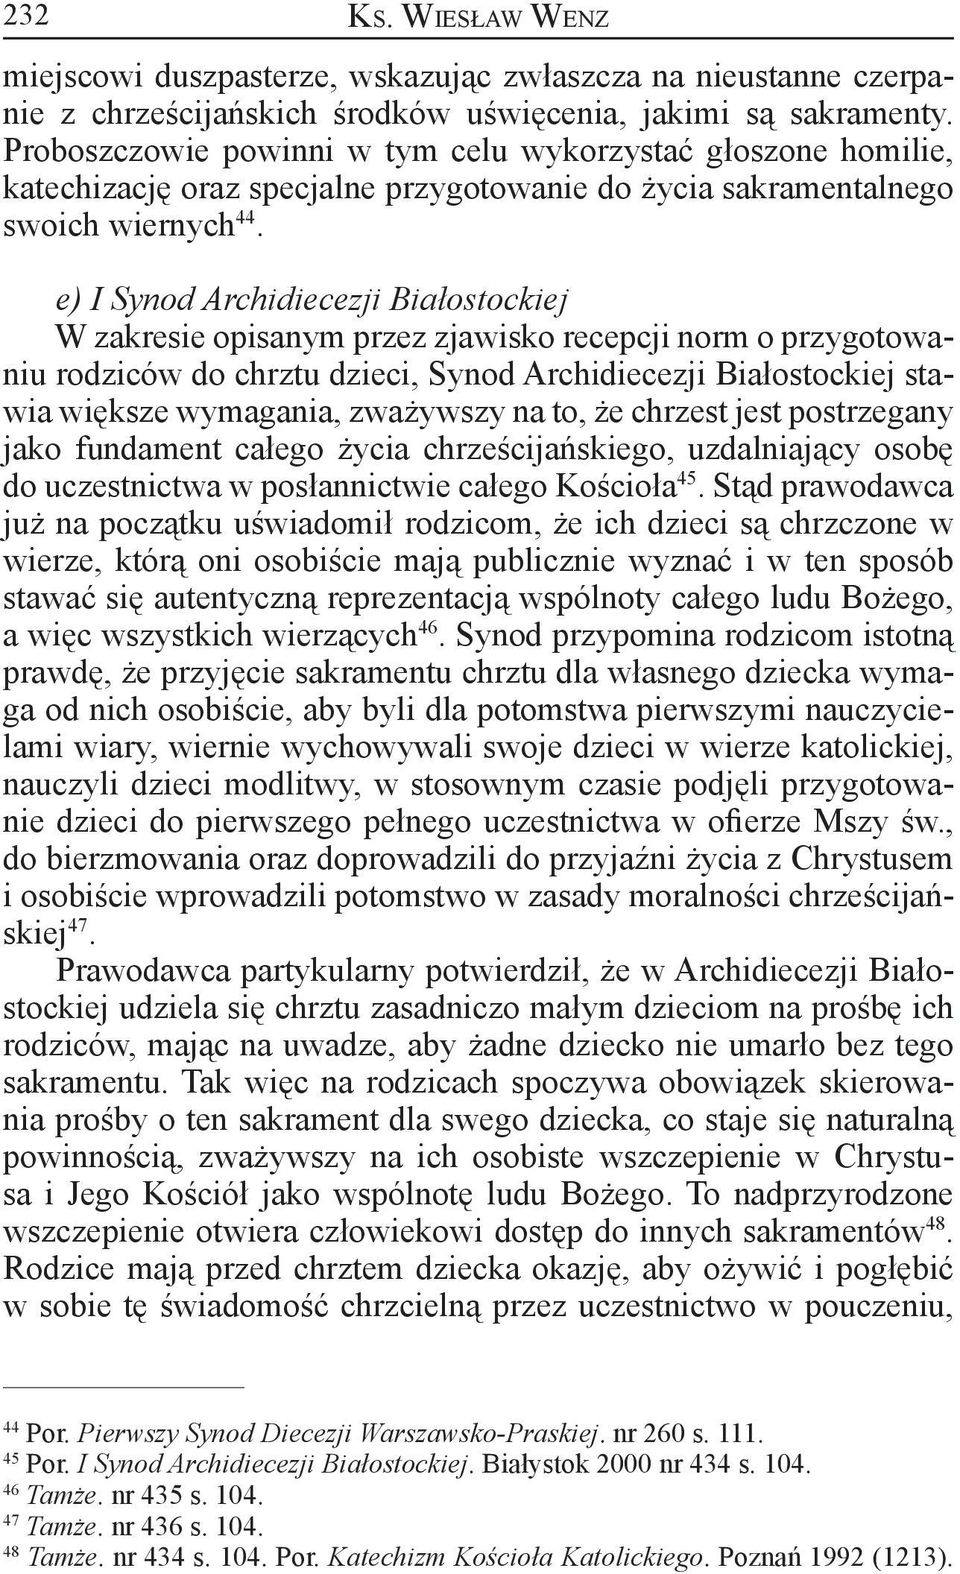 e) I Synod Archidiecezji Białostockiej W zakresie opisanym przez zjawisko recepcji norm o przygotowaniu rodziców do chrztu dzieci, Synod Archidiecezji Białostockiej stawia większe wymagania,